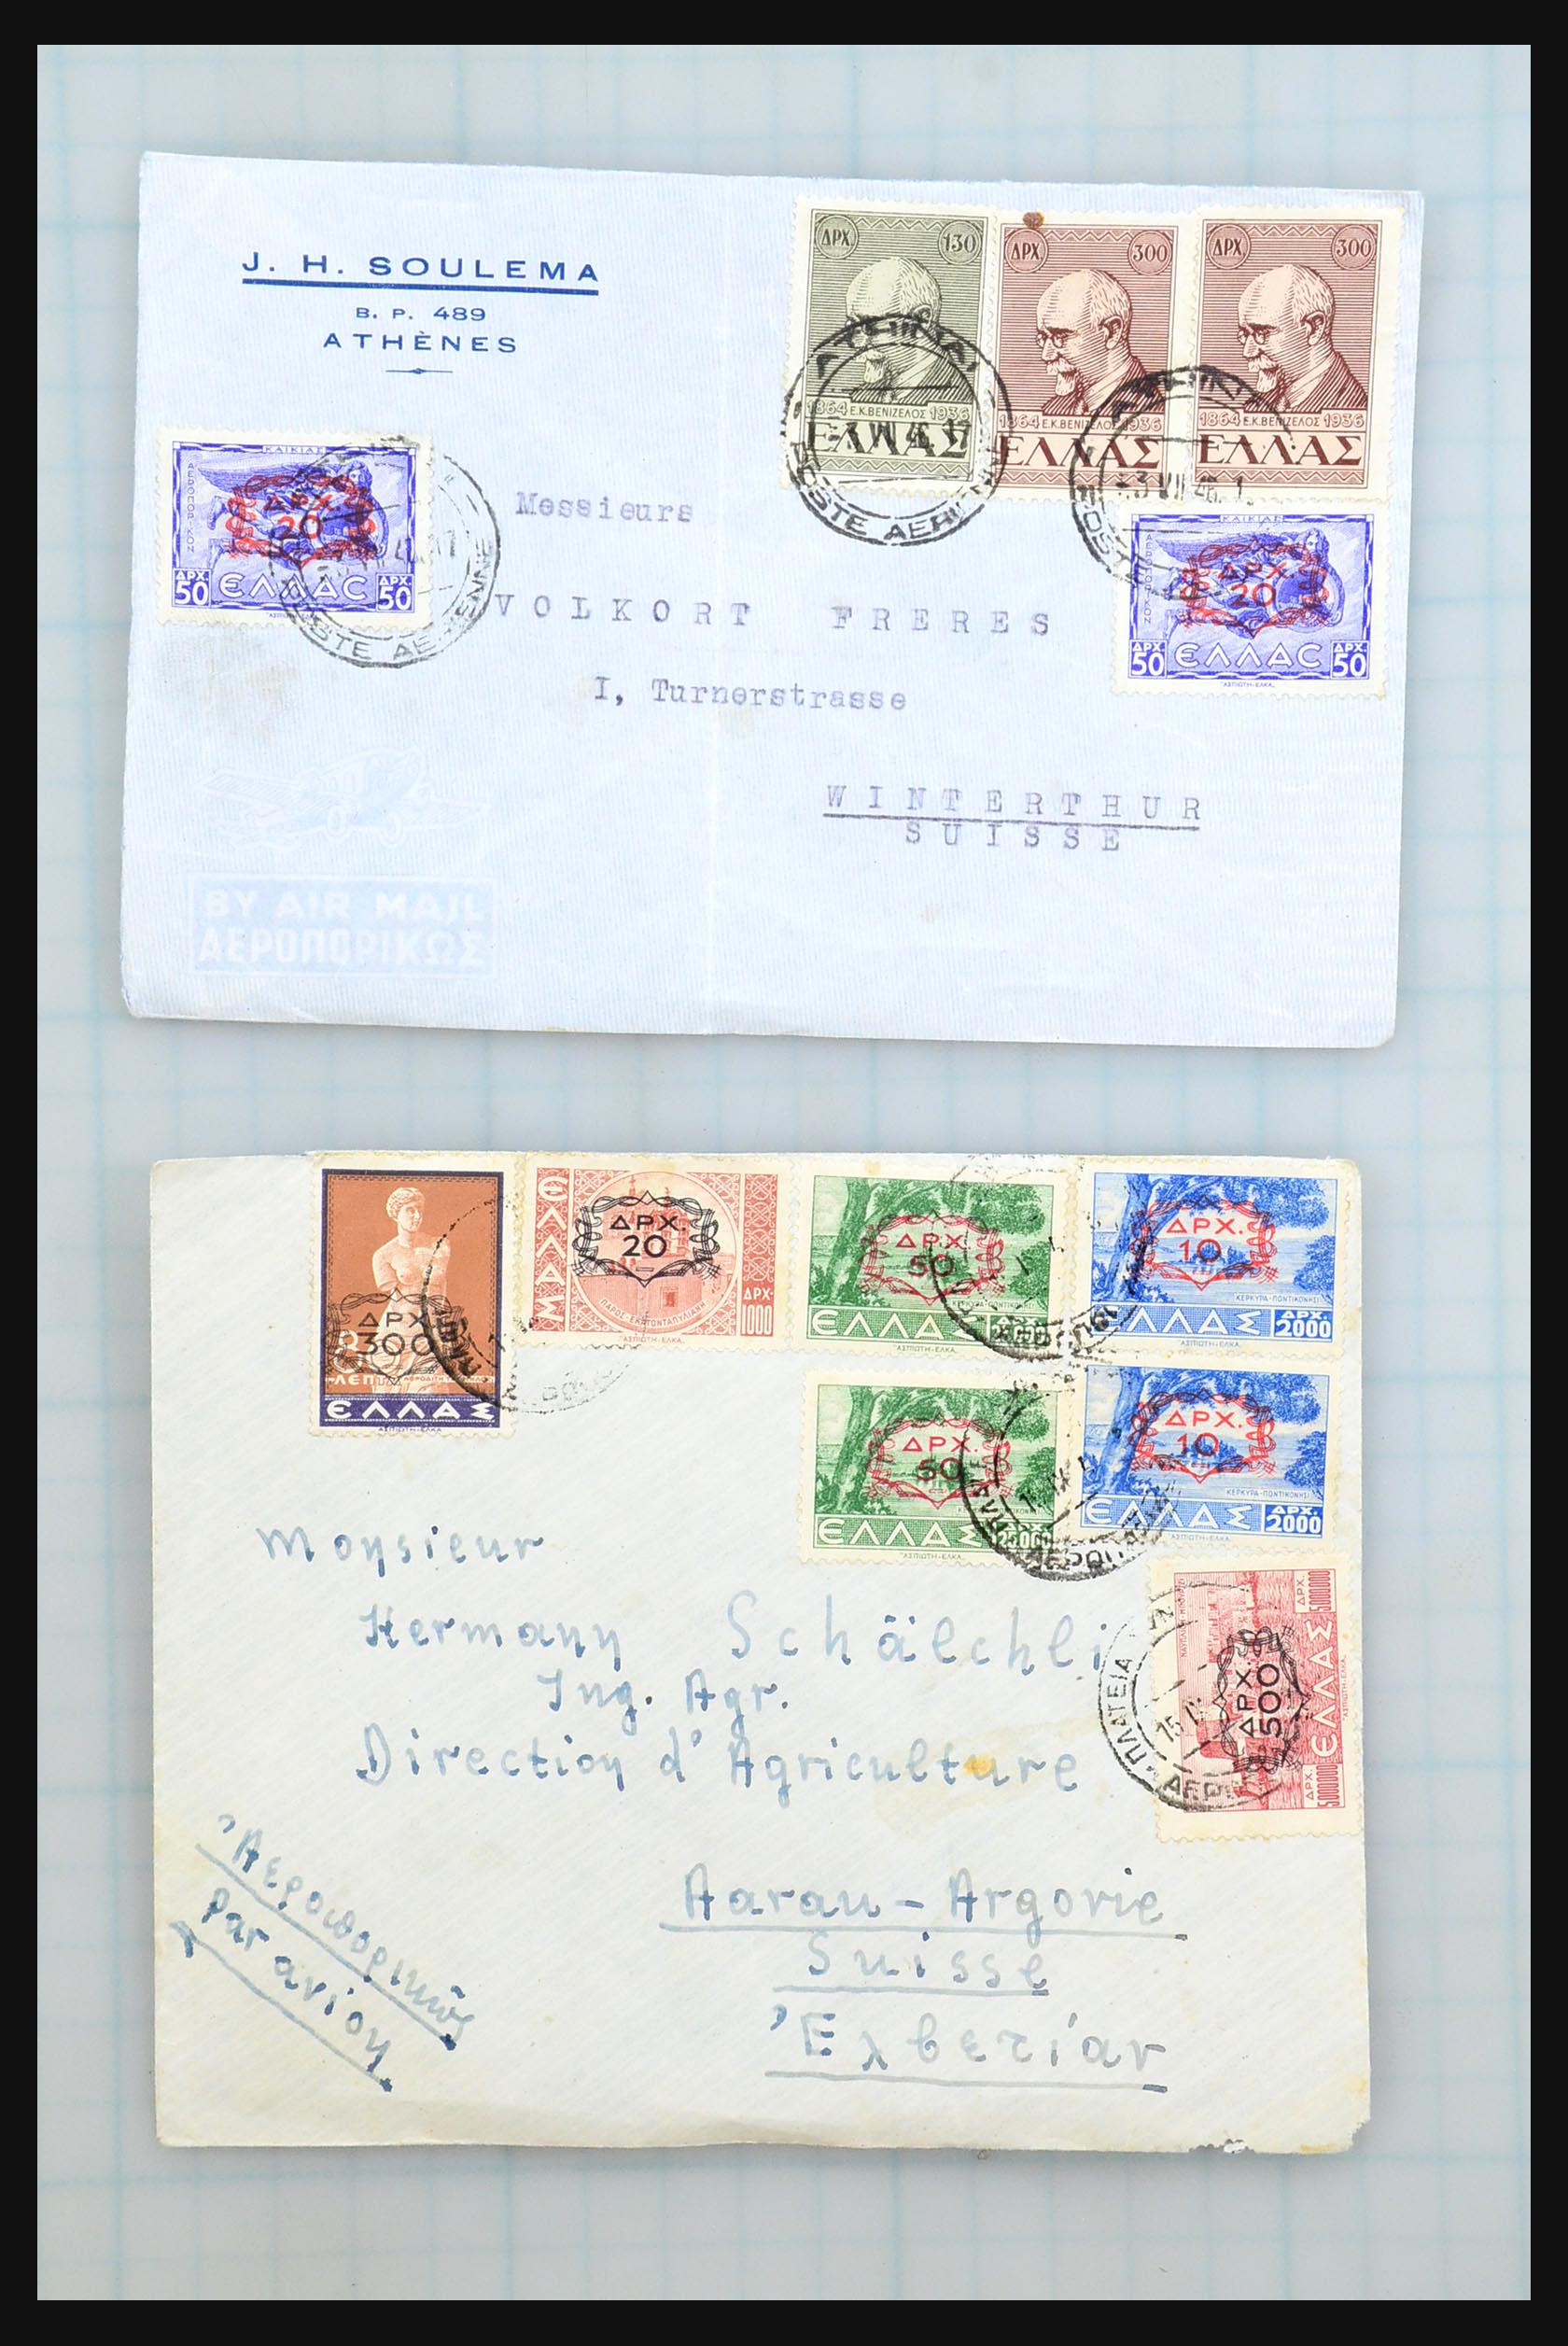 31358 089 - 31358 Portugal/Luxemburg/Griekenland brieven 1880-1960.